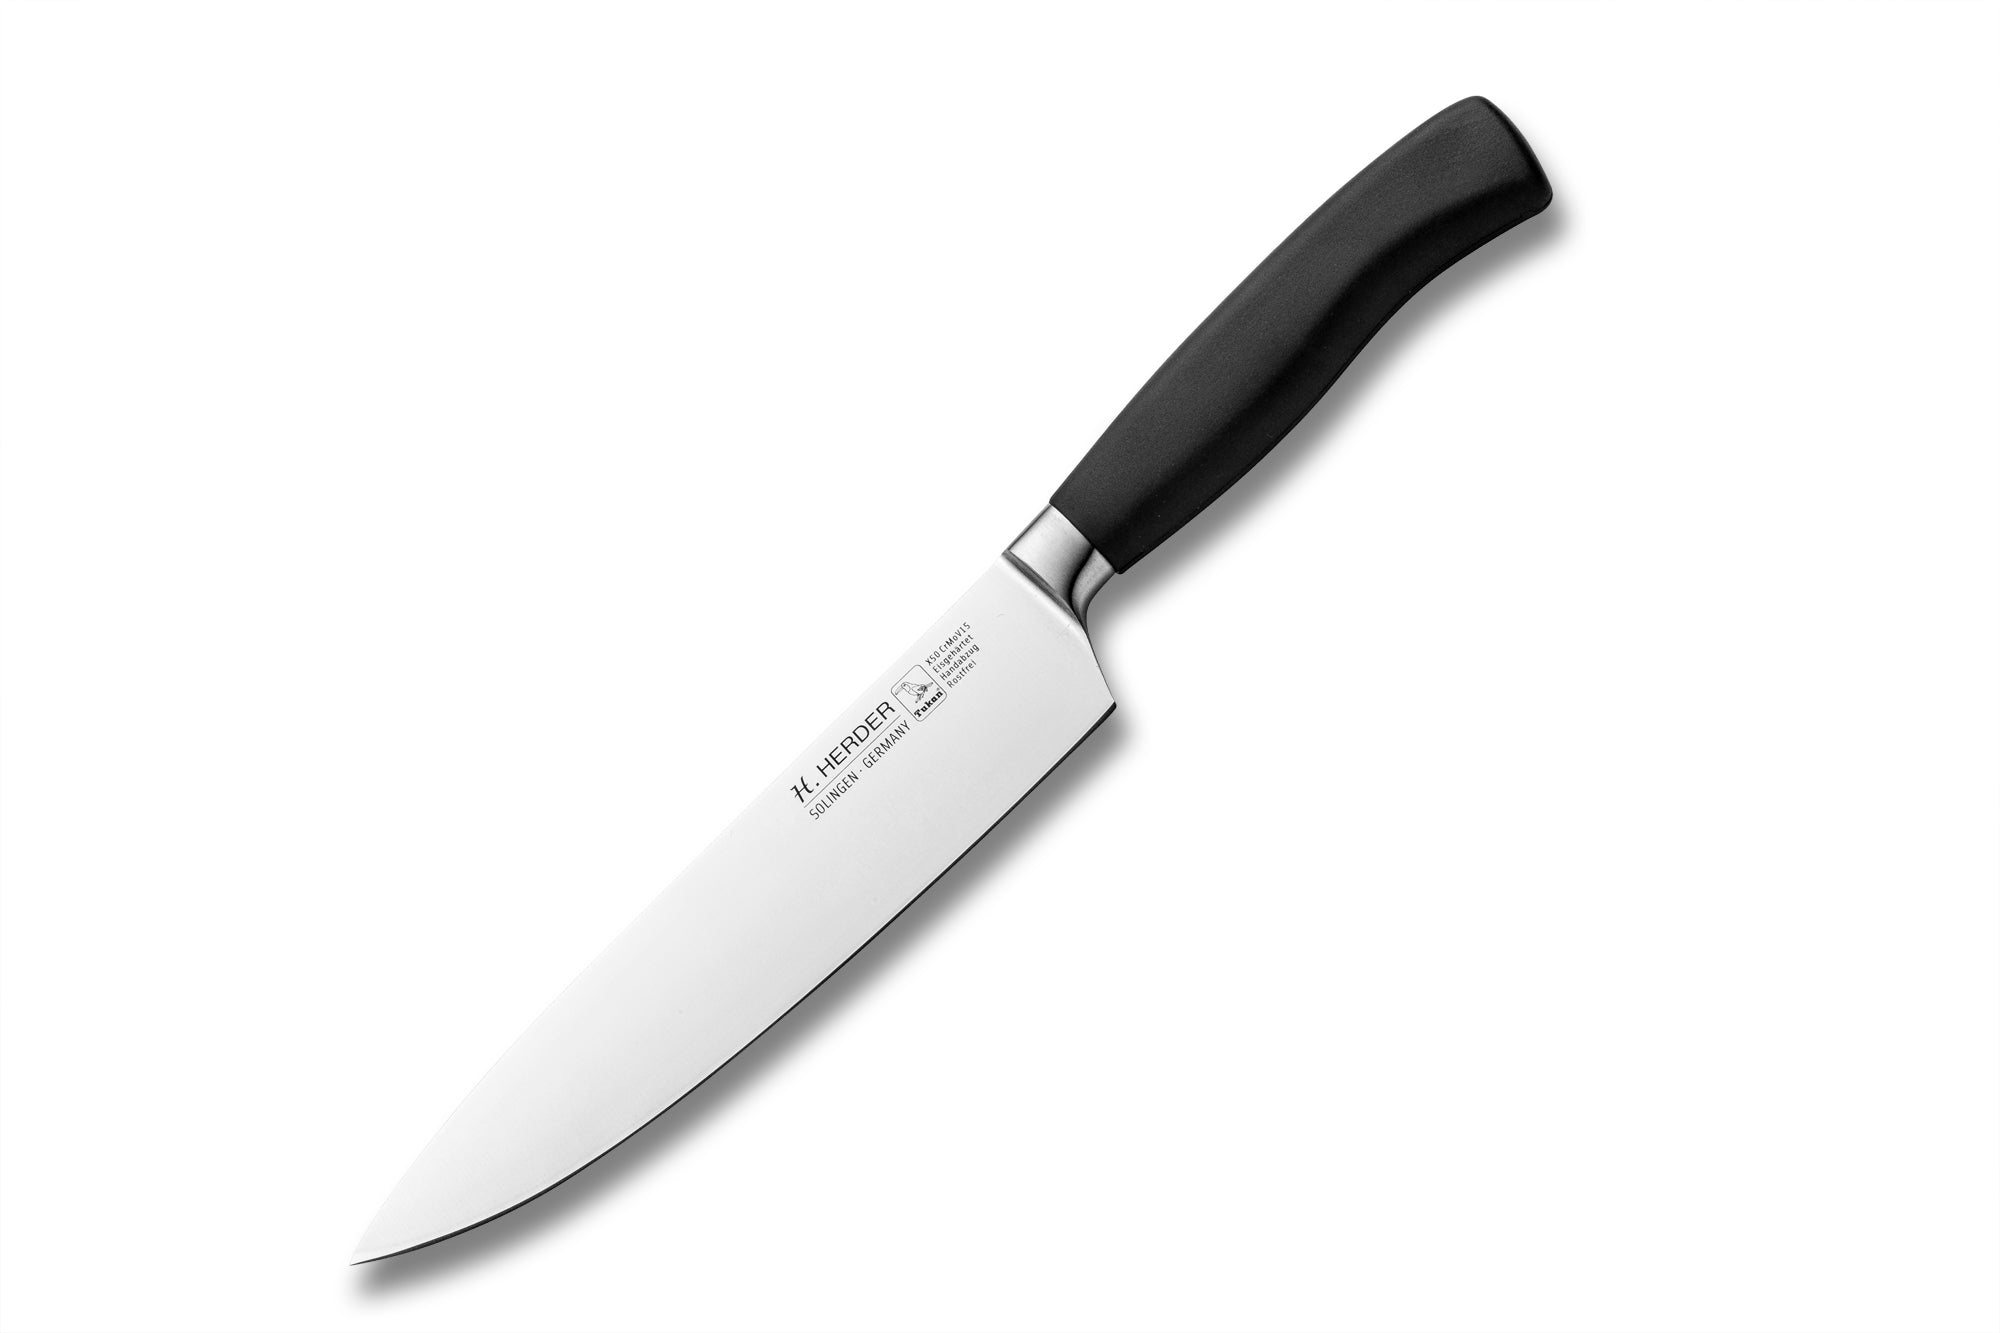 Cuchillo de cocinero Eterno Gastro, longitud de la hoja 21cm